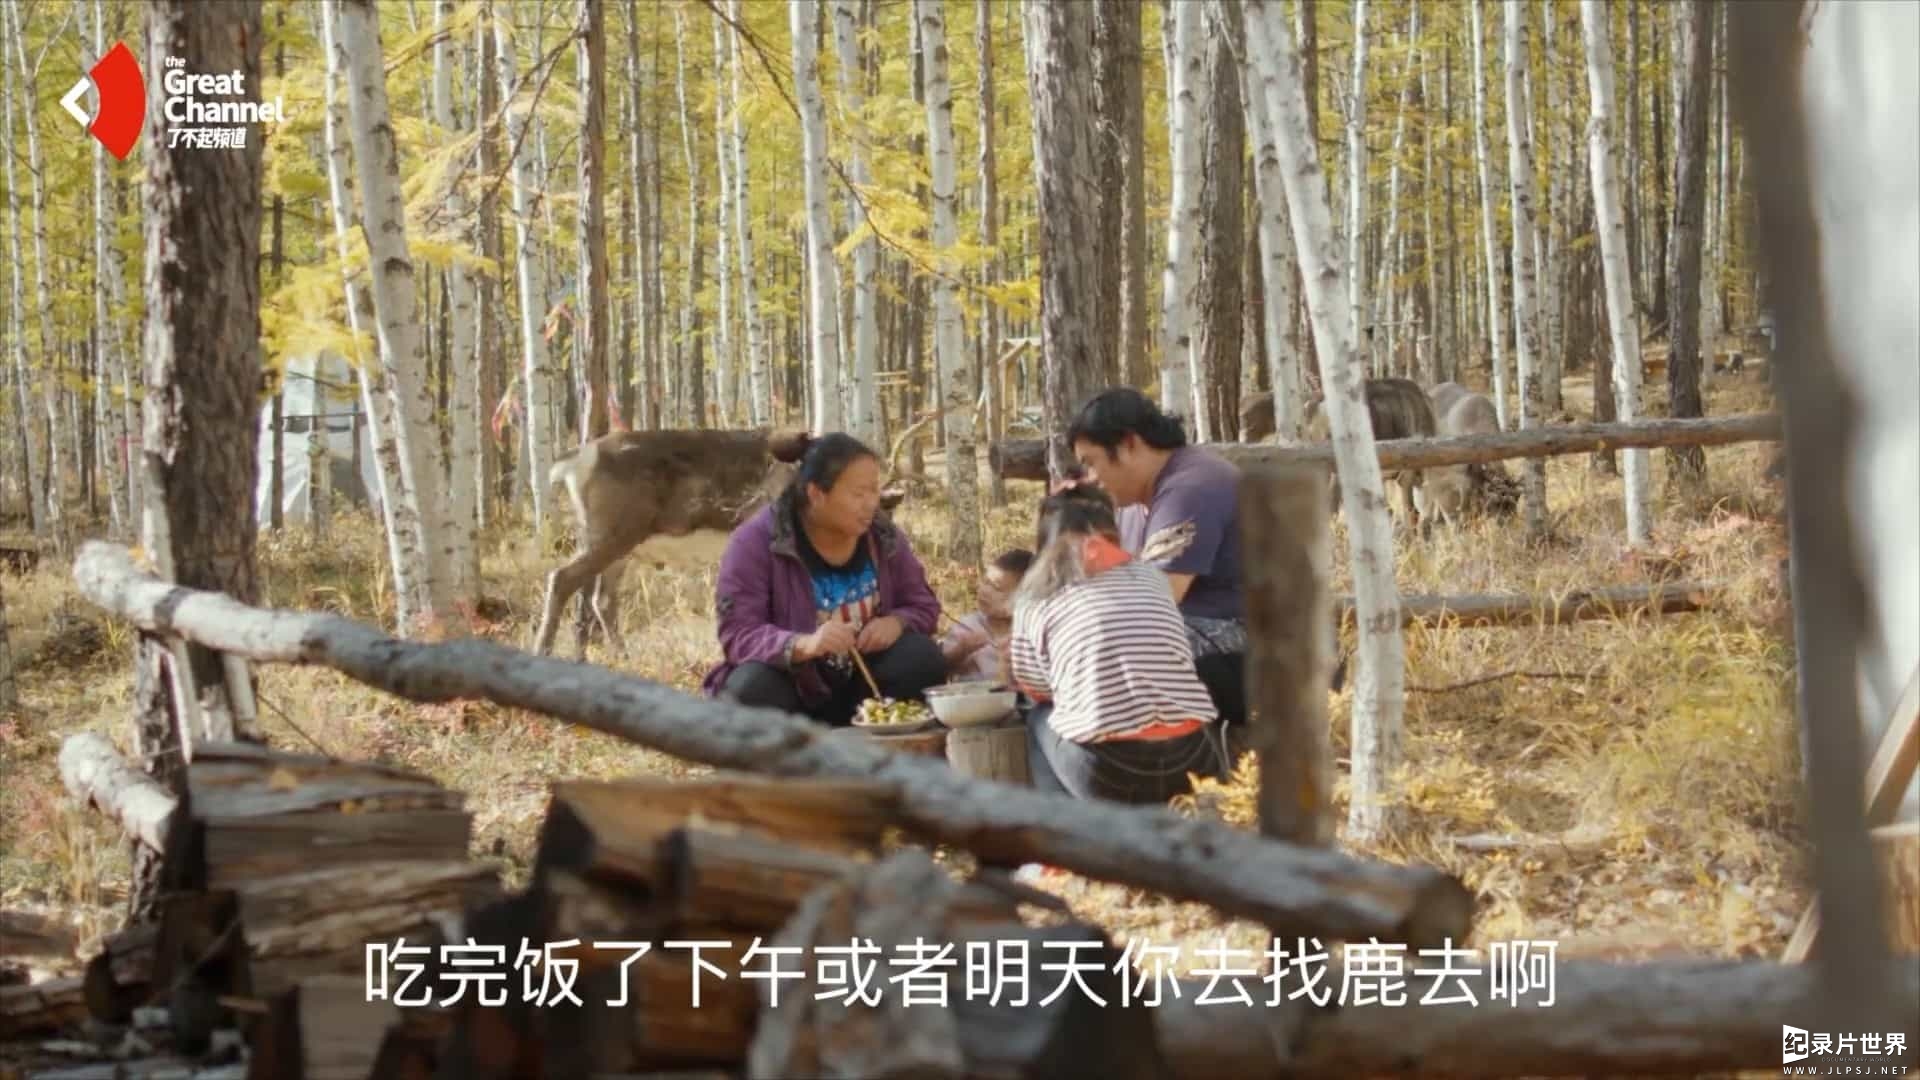 国产纪录片《了不起的村落 The Great Tribe》第1季